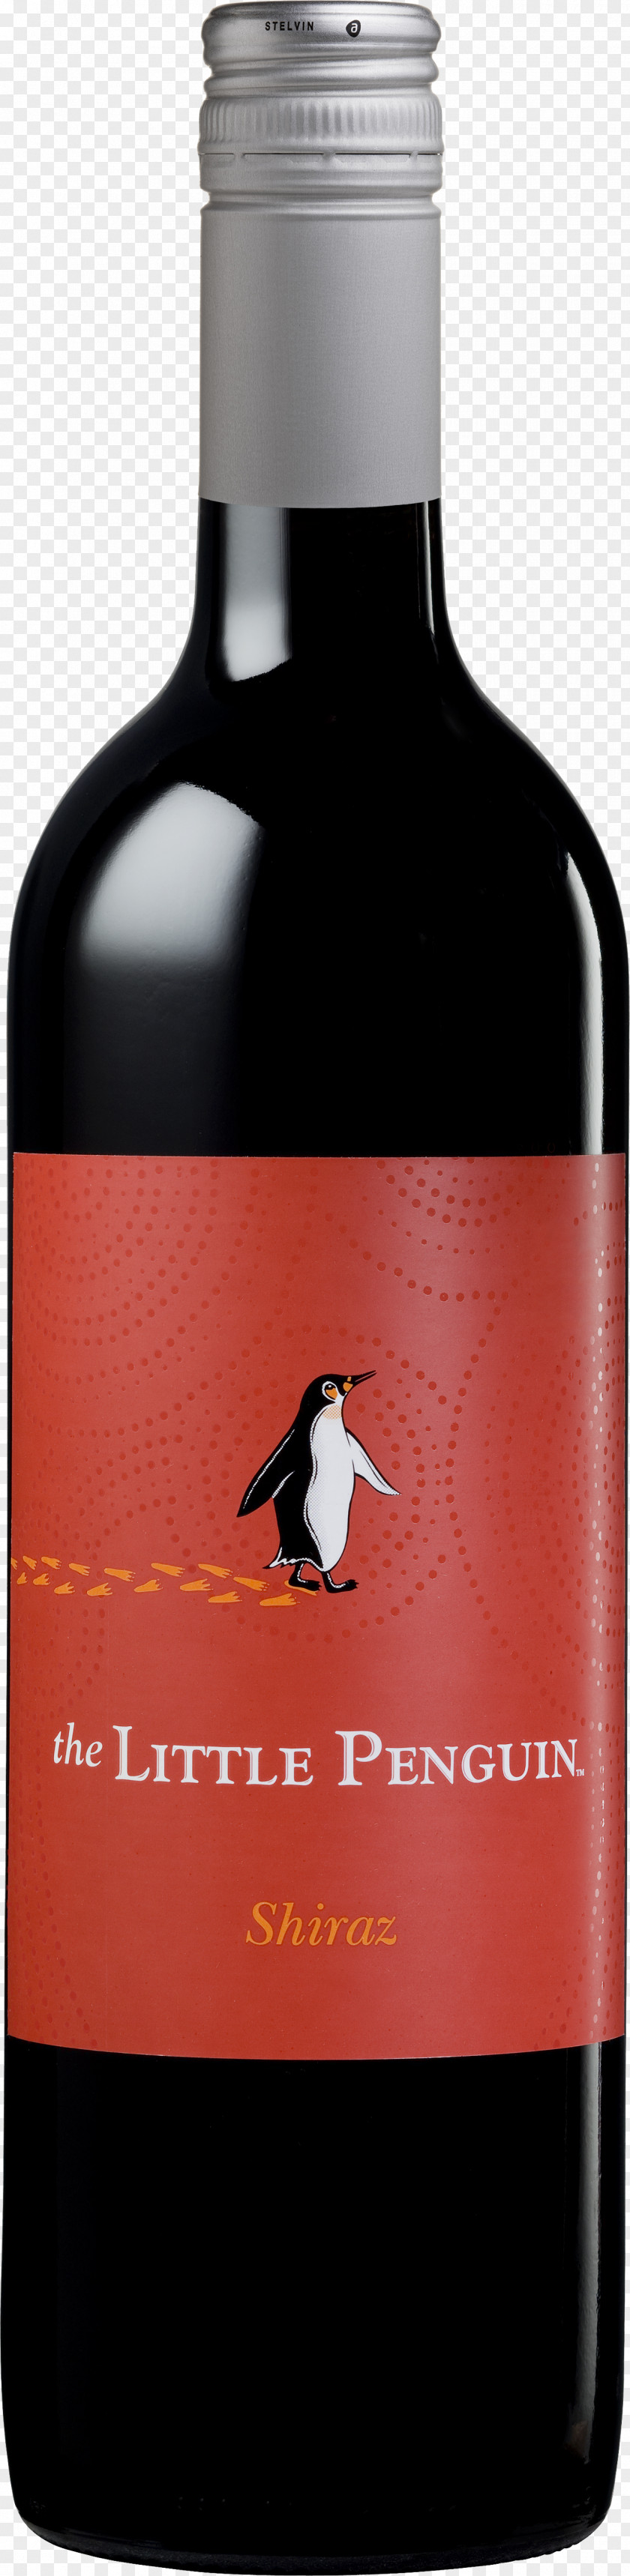 Little Penguin Liqueur Bronco Wine Company Merlot Shiraz PNG